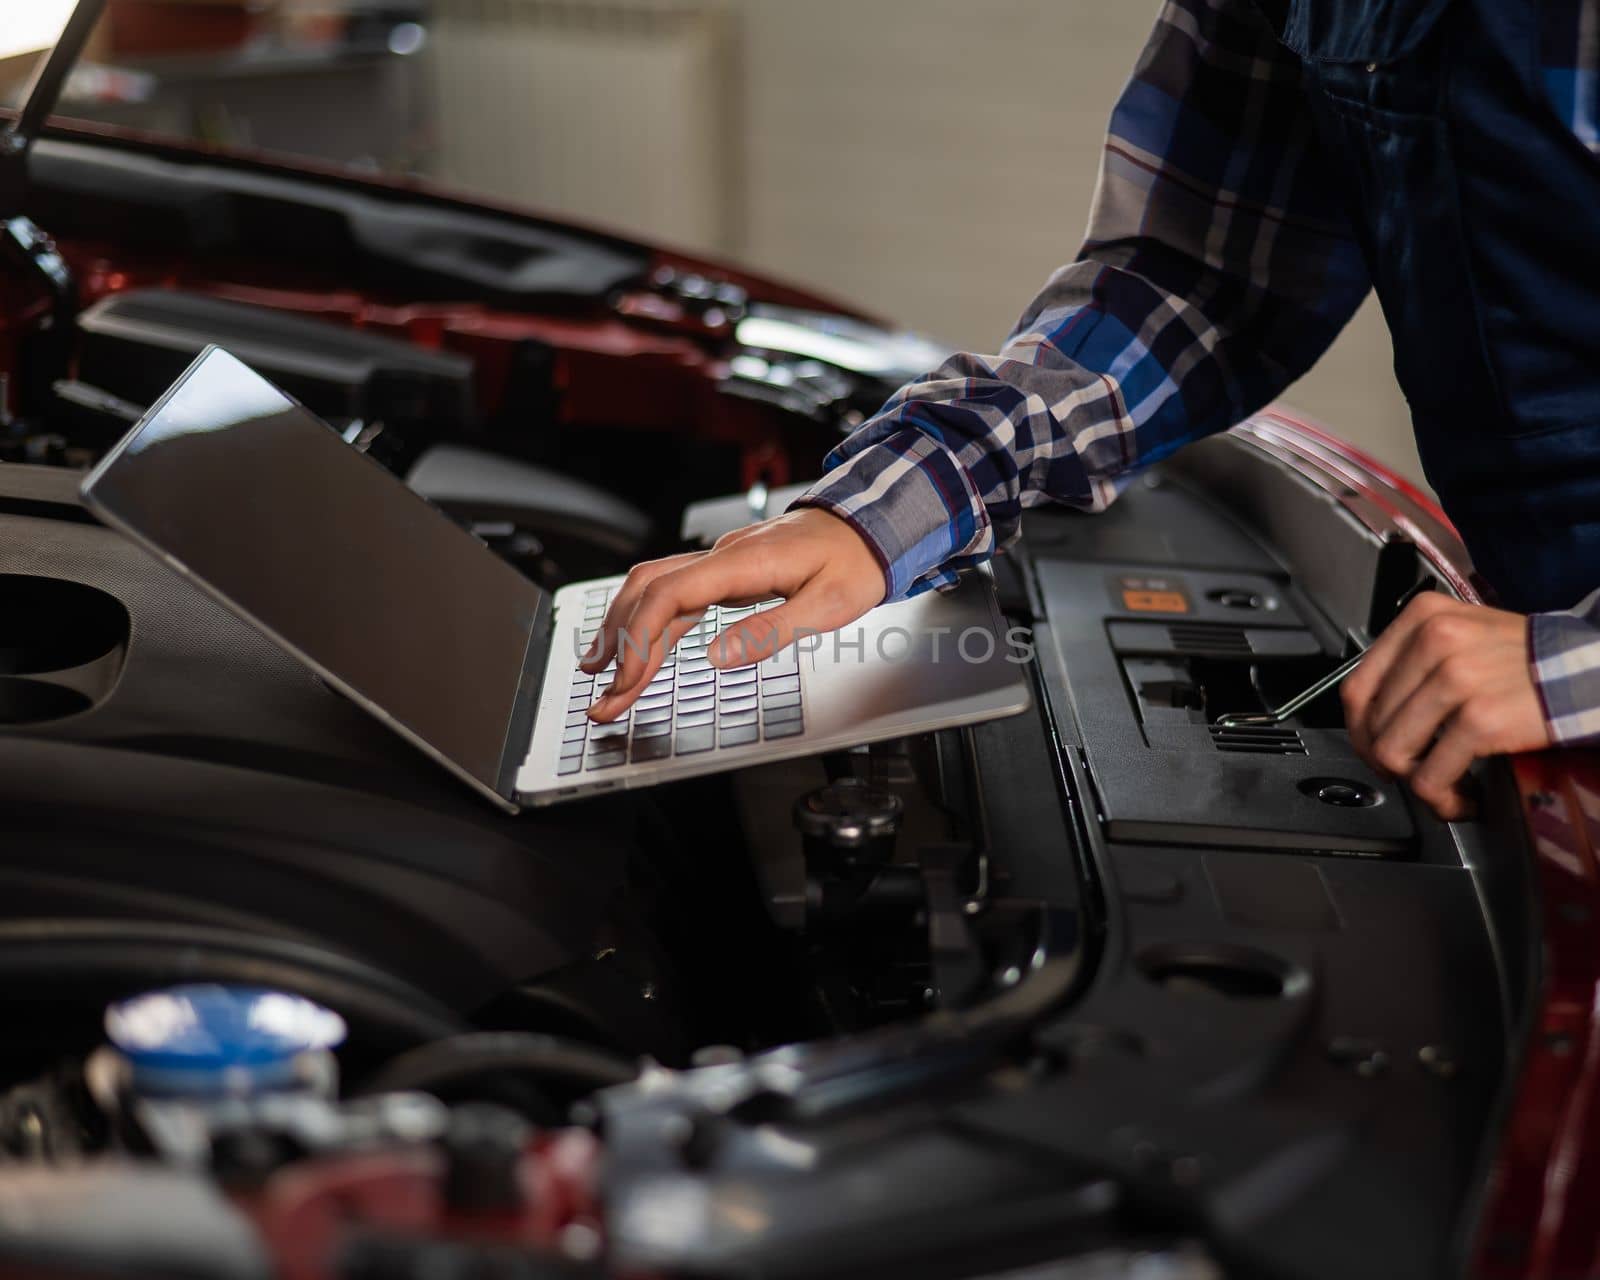 Woman auto mechanic doing engine diagnostics using laptop